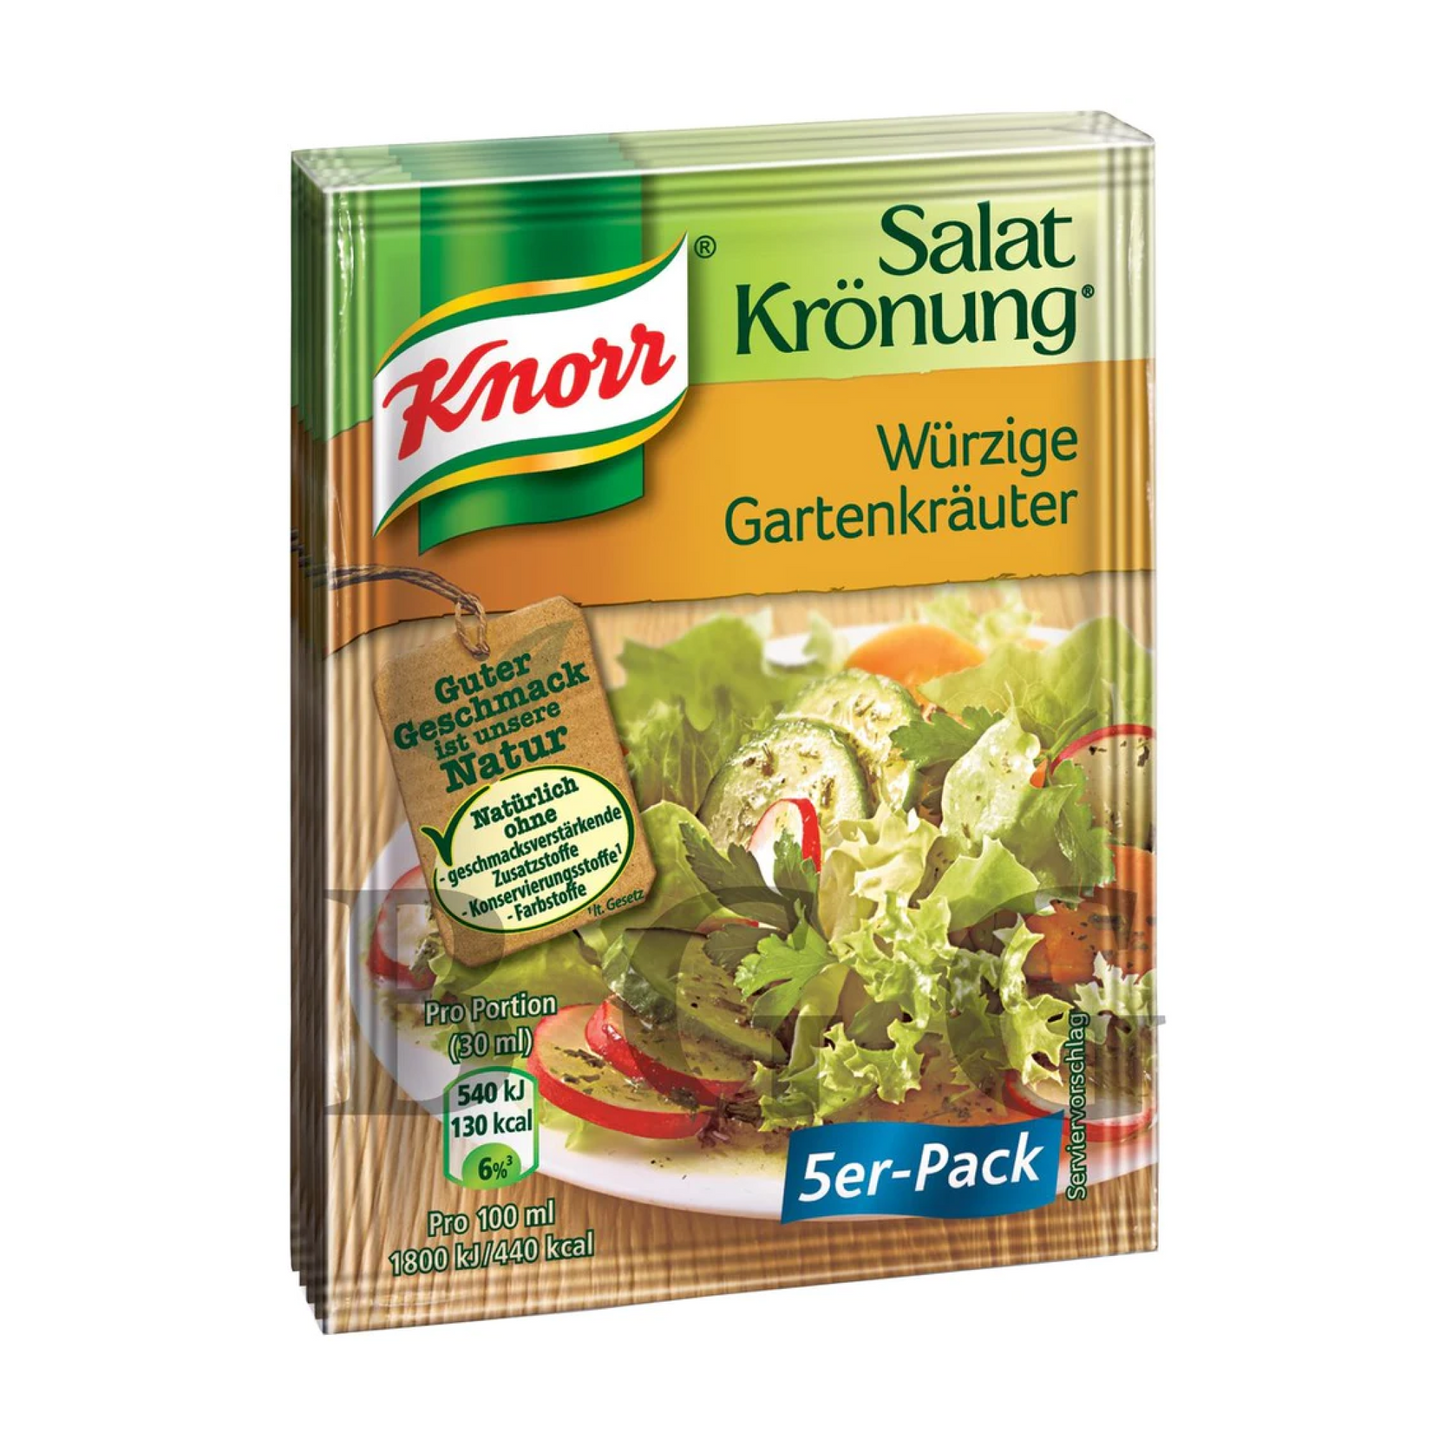 Knorr Würzige Gartenkräuter Salat Krönung 5pk 8g – Food Depot Toronto